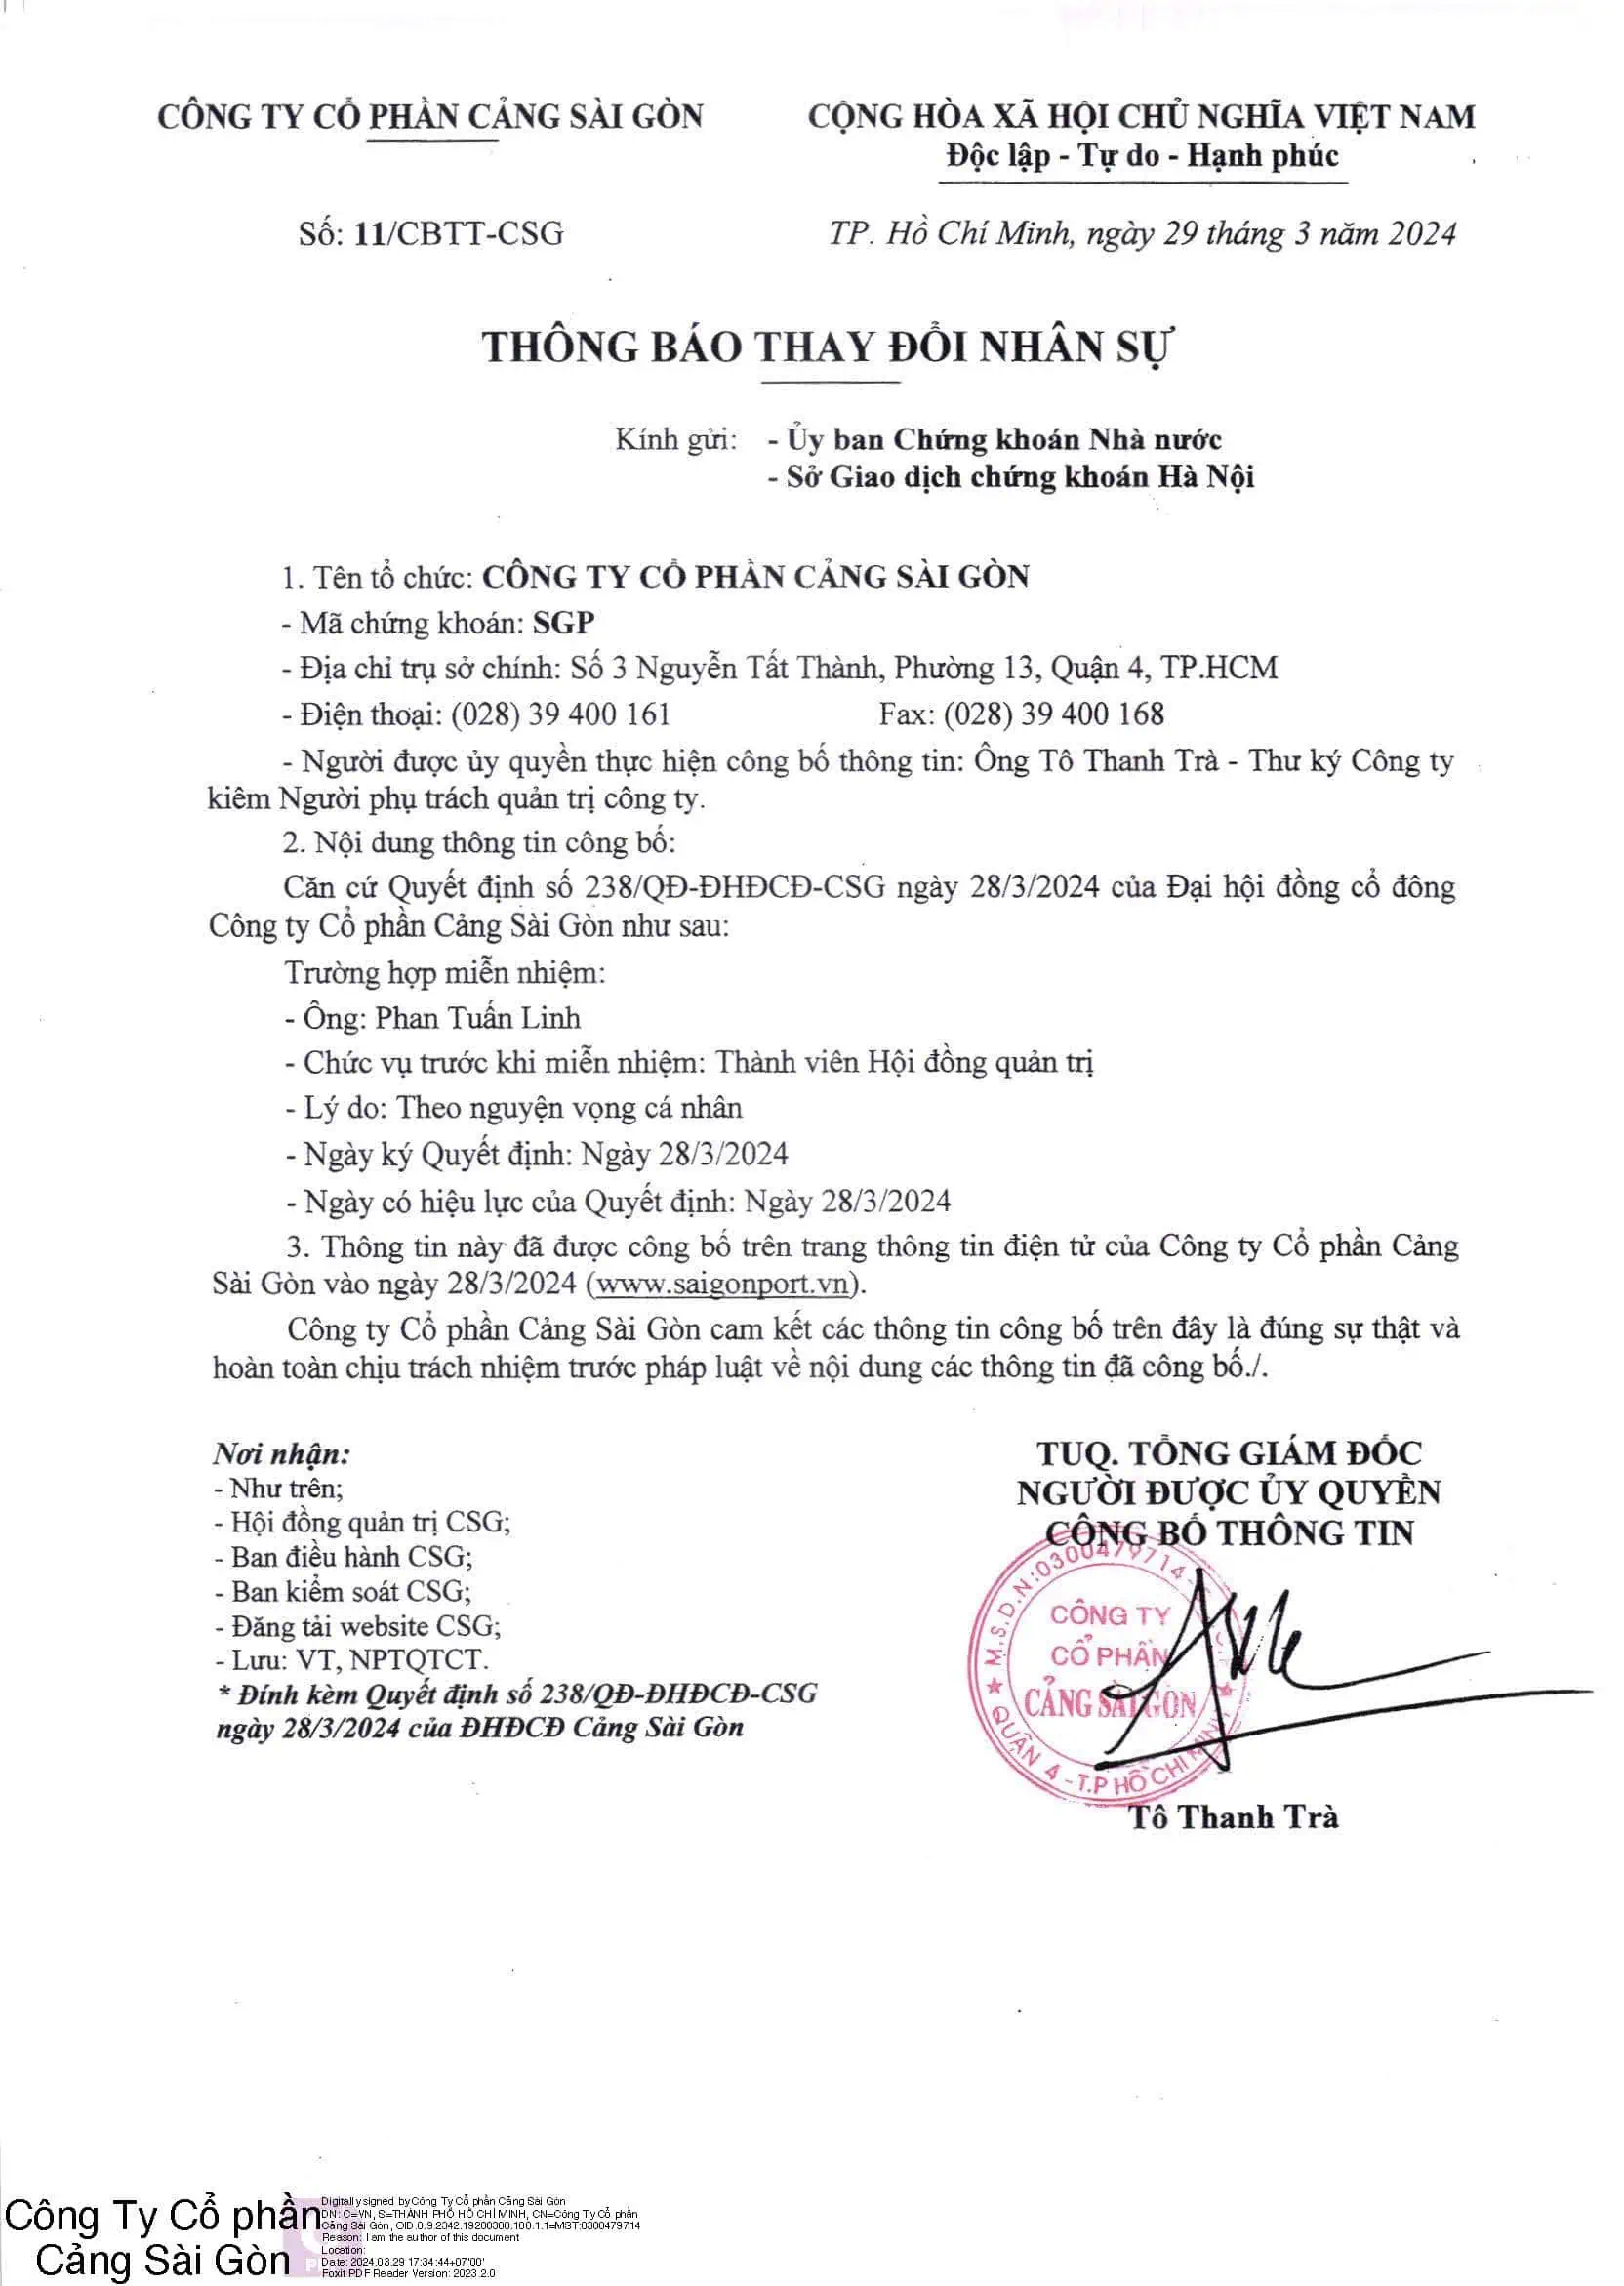 Thông báo số 11/CBTT-CSG về việc thay đổi nhân sự Công ty Cổ phần Cảng Sài Gòn 2024